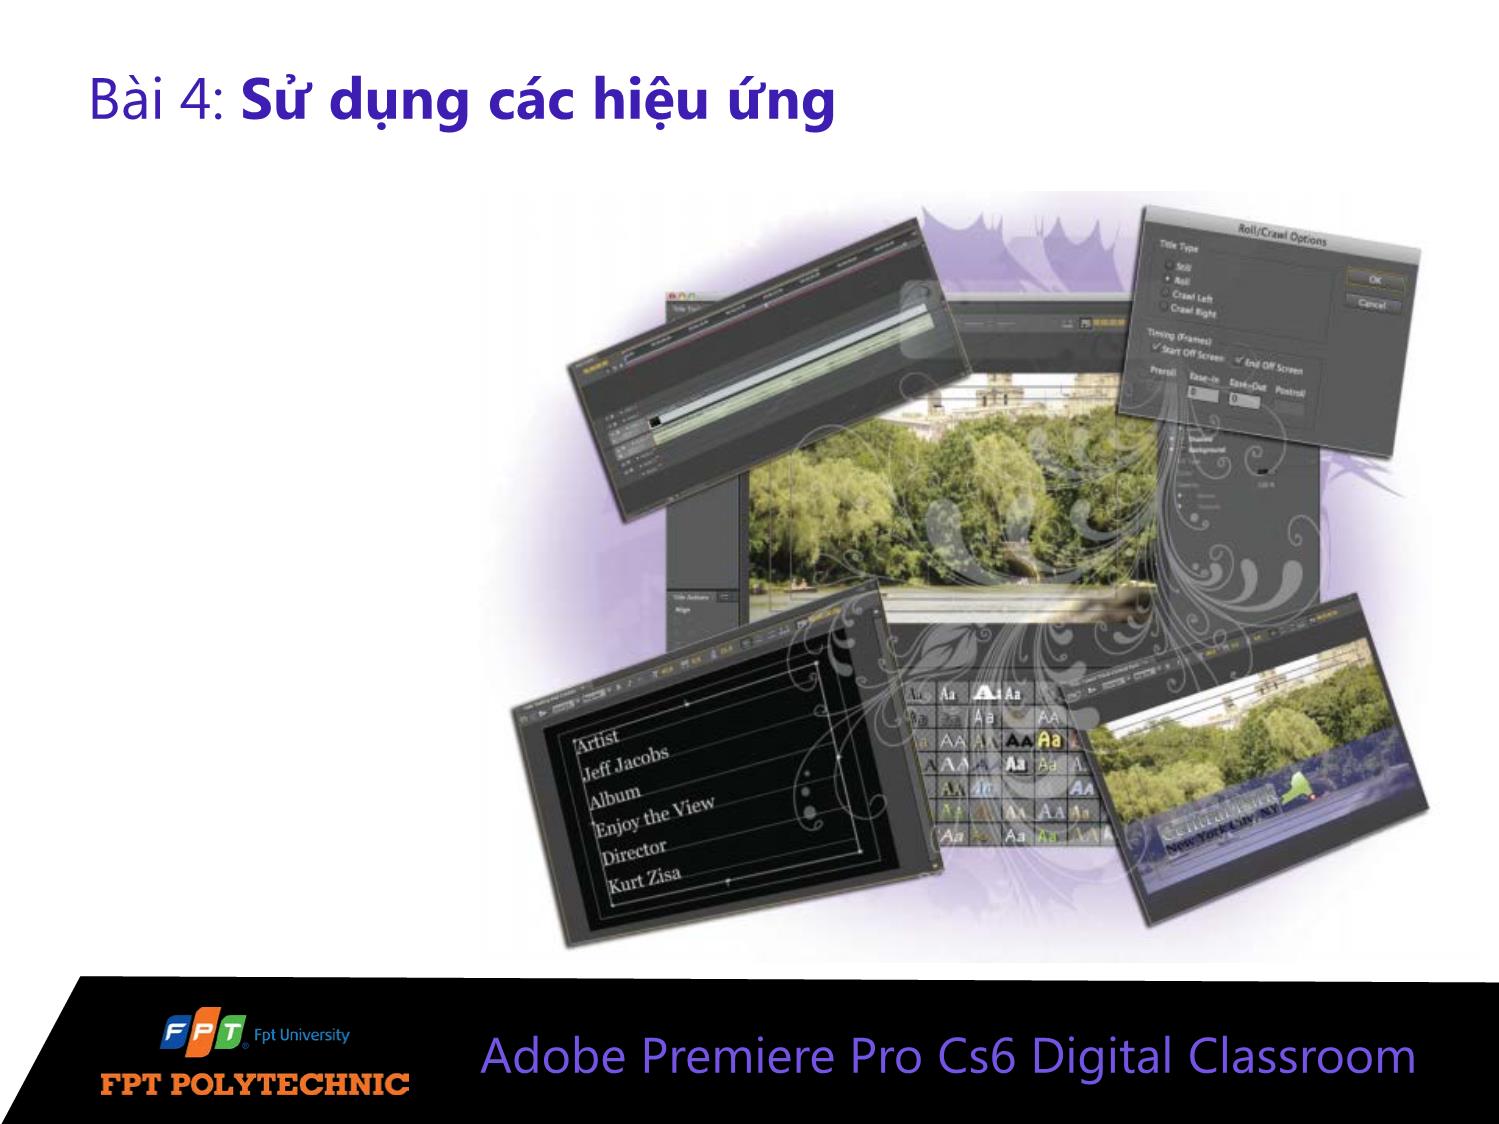 Bài giảng Xử lý hậu kỳ với Adobe Premiere Pro Cs6 - Bài 4: Sử dụng các hiệu ứng trang 1